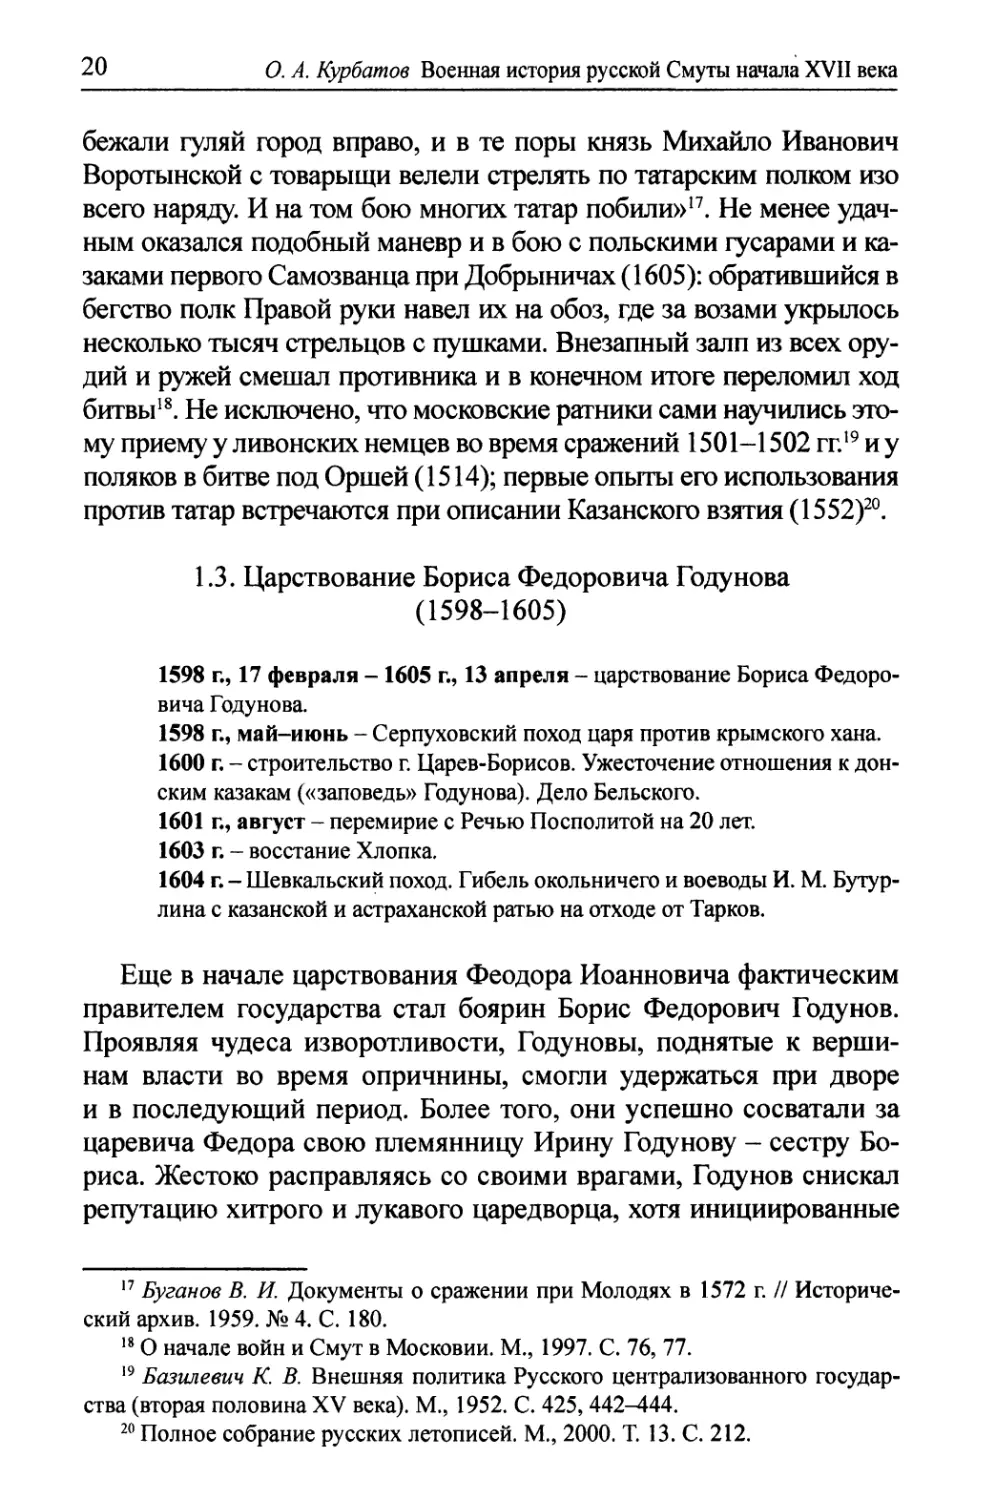 1.3. Царствование Бориса Федоровича Годунова (1598-1605)